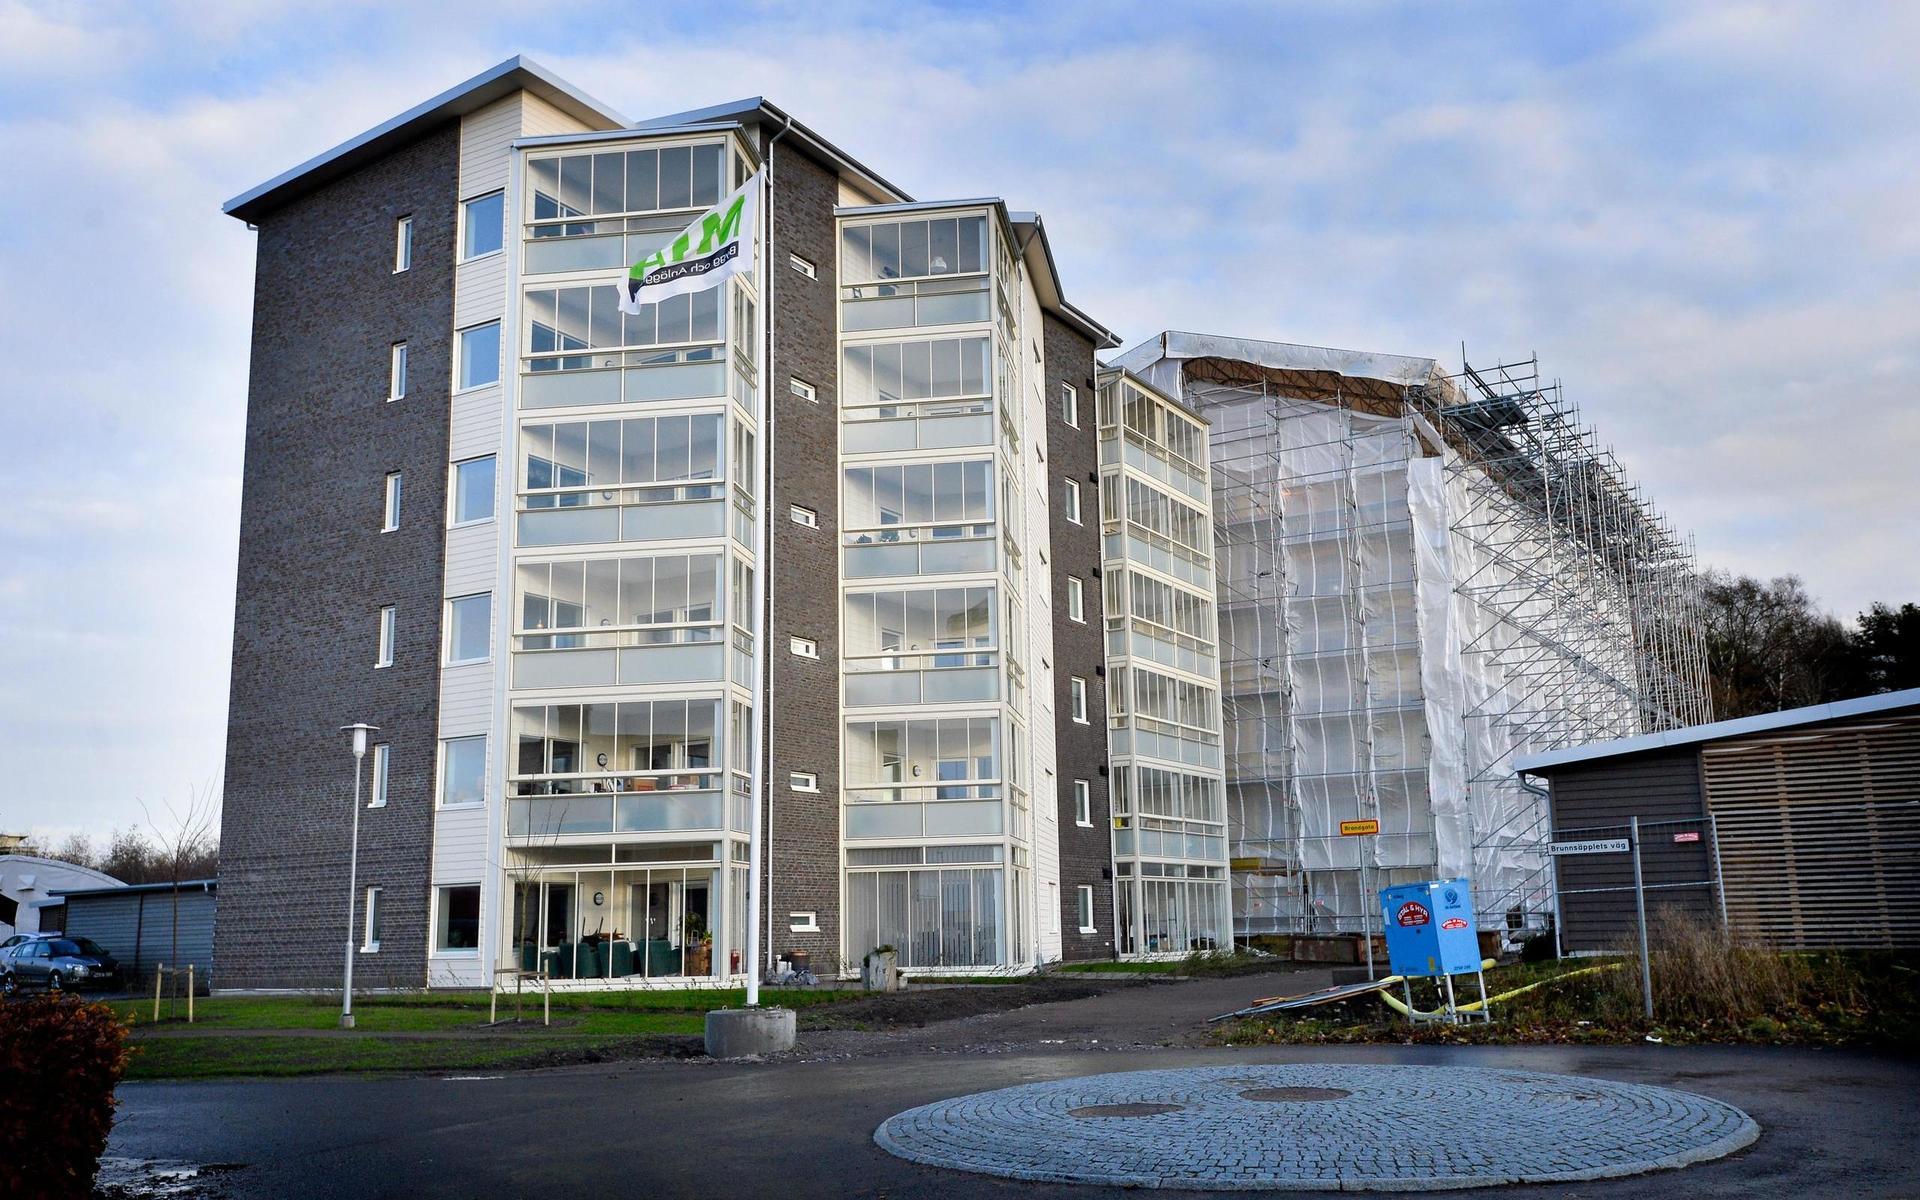 2015. Bostadsrättsföreningen Rubinäpplet på Göingegården stod färdig och den sällade sig då till hundratals nya bostäder på Göingegården. Första spadtaget till denna nya stadsdel togs 2004.